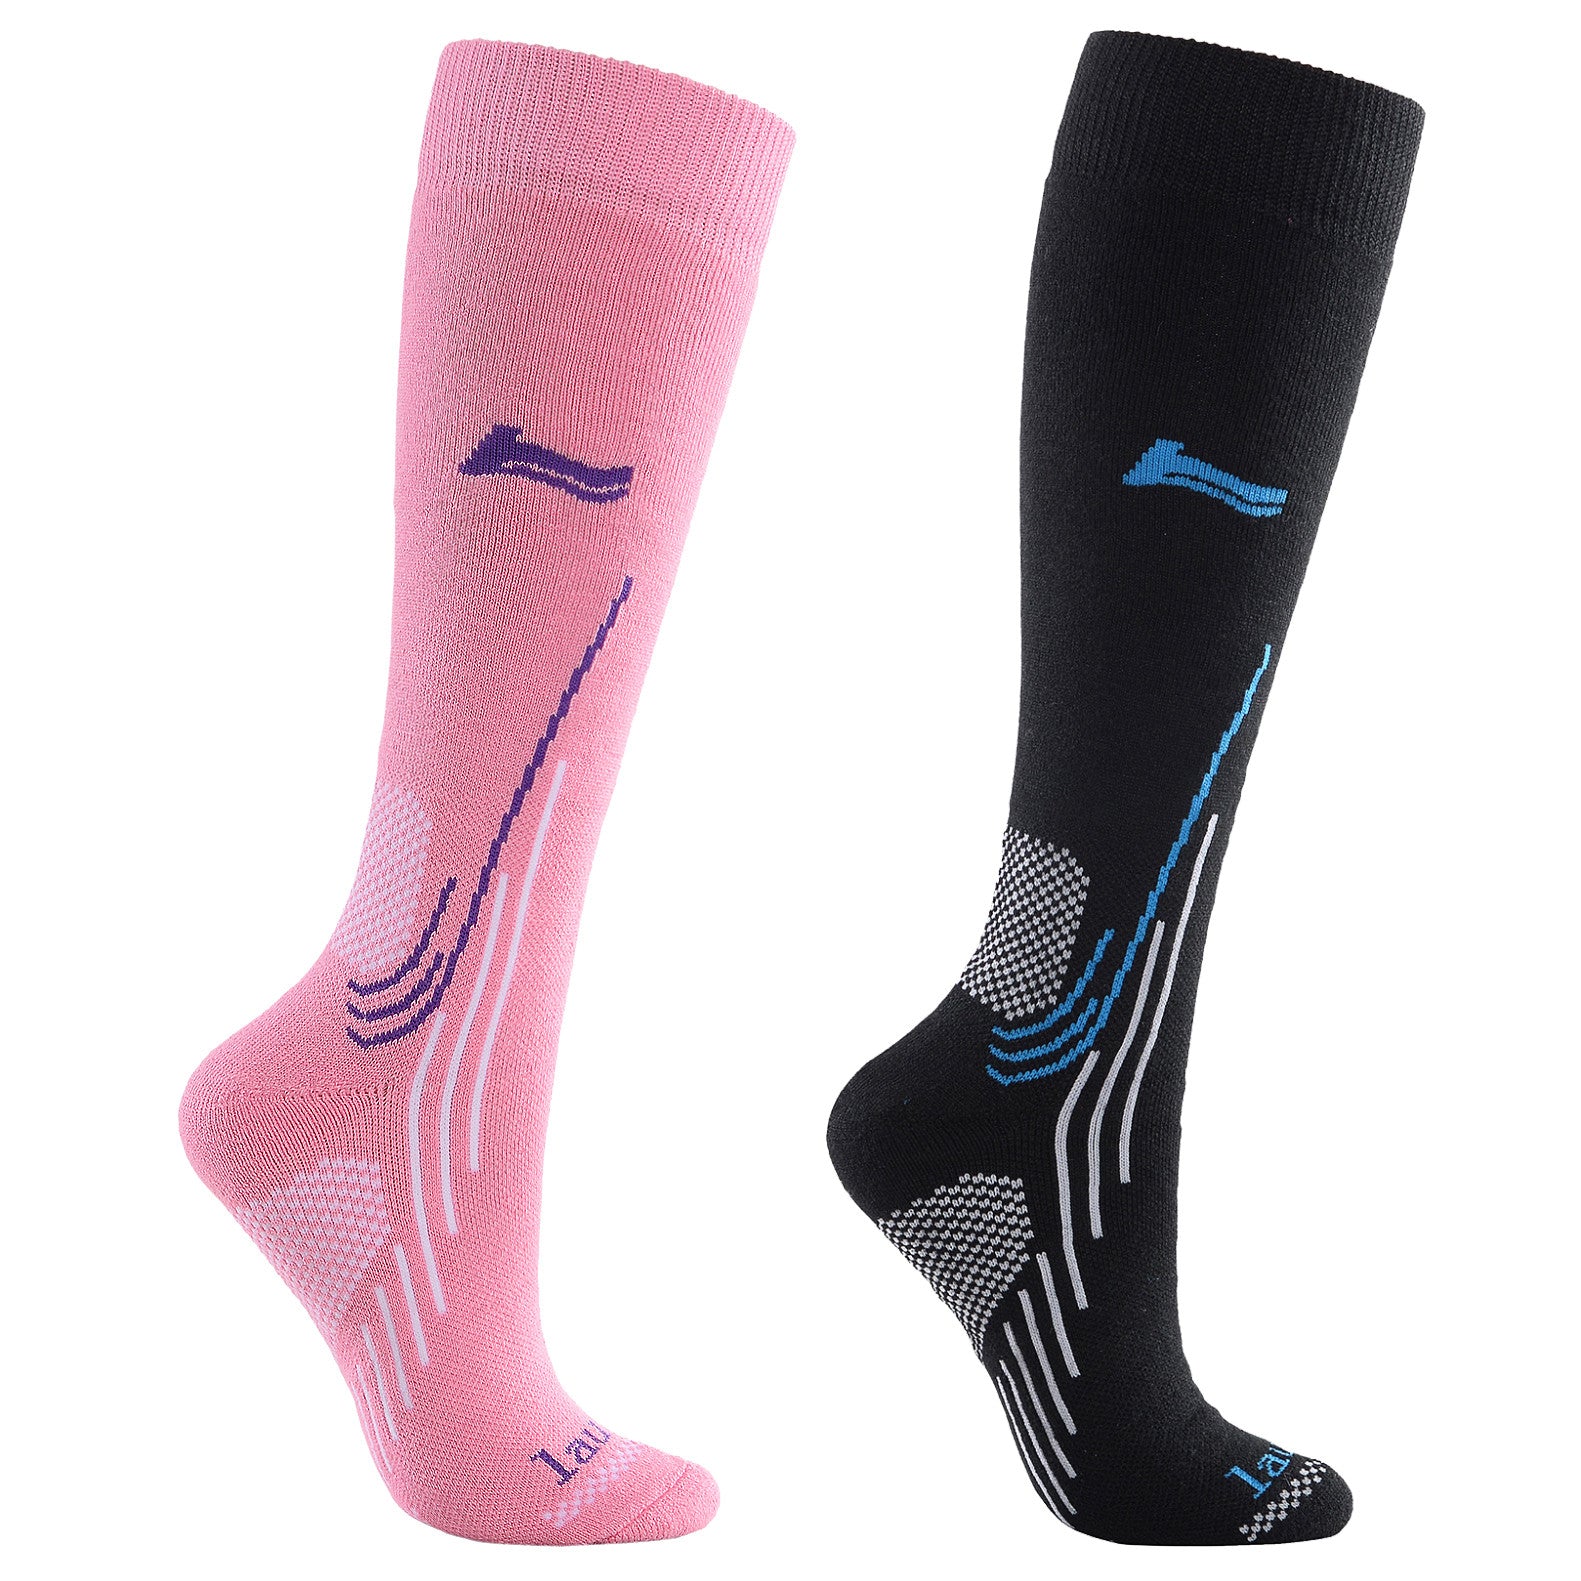 Gift Set Size UK 3-8 Laulax Ladies 2 Pairs High Quality Merino Wool Ski Socks 